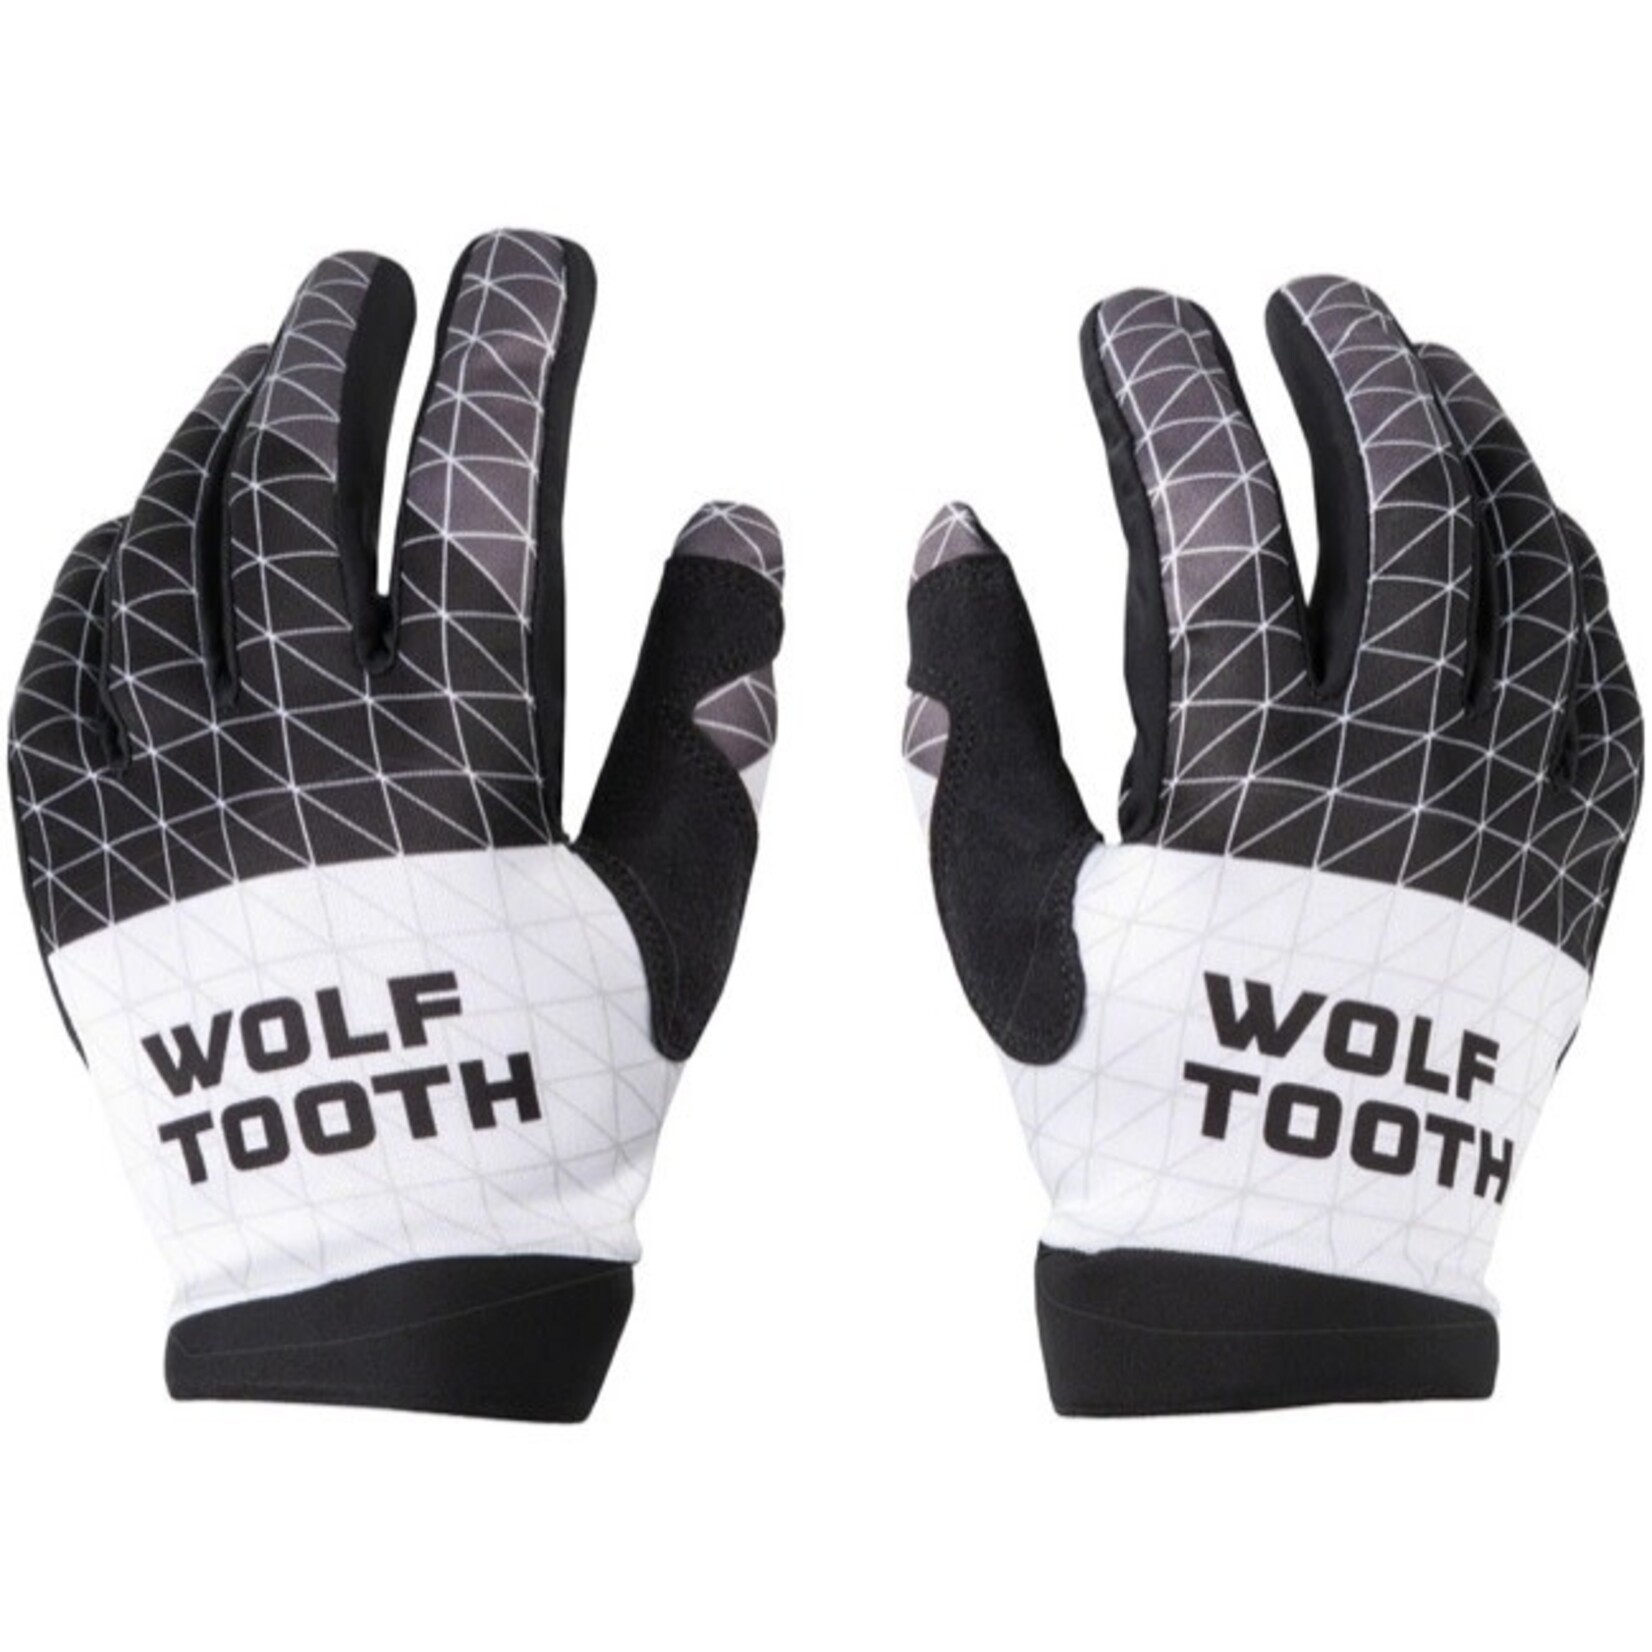 Wolf Tooth Components Wolf Tooth Components Flexor Full Finger Glove, Large, Matrix